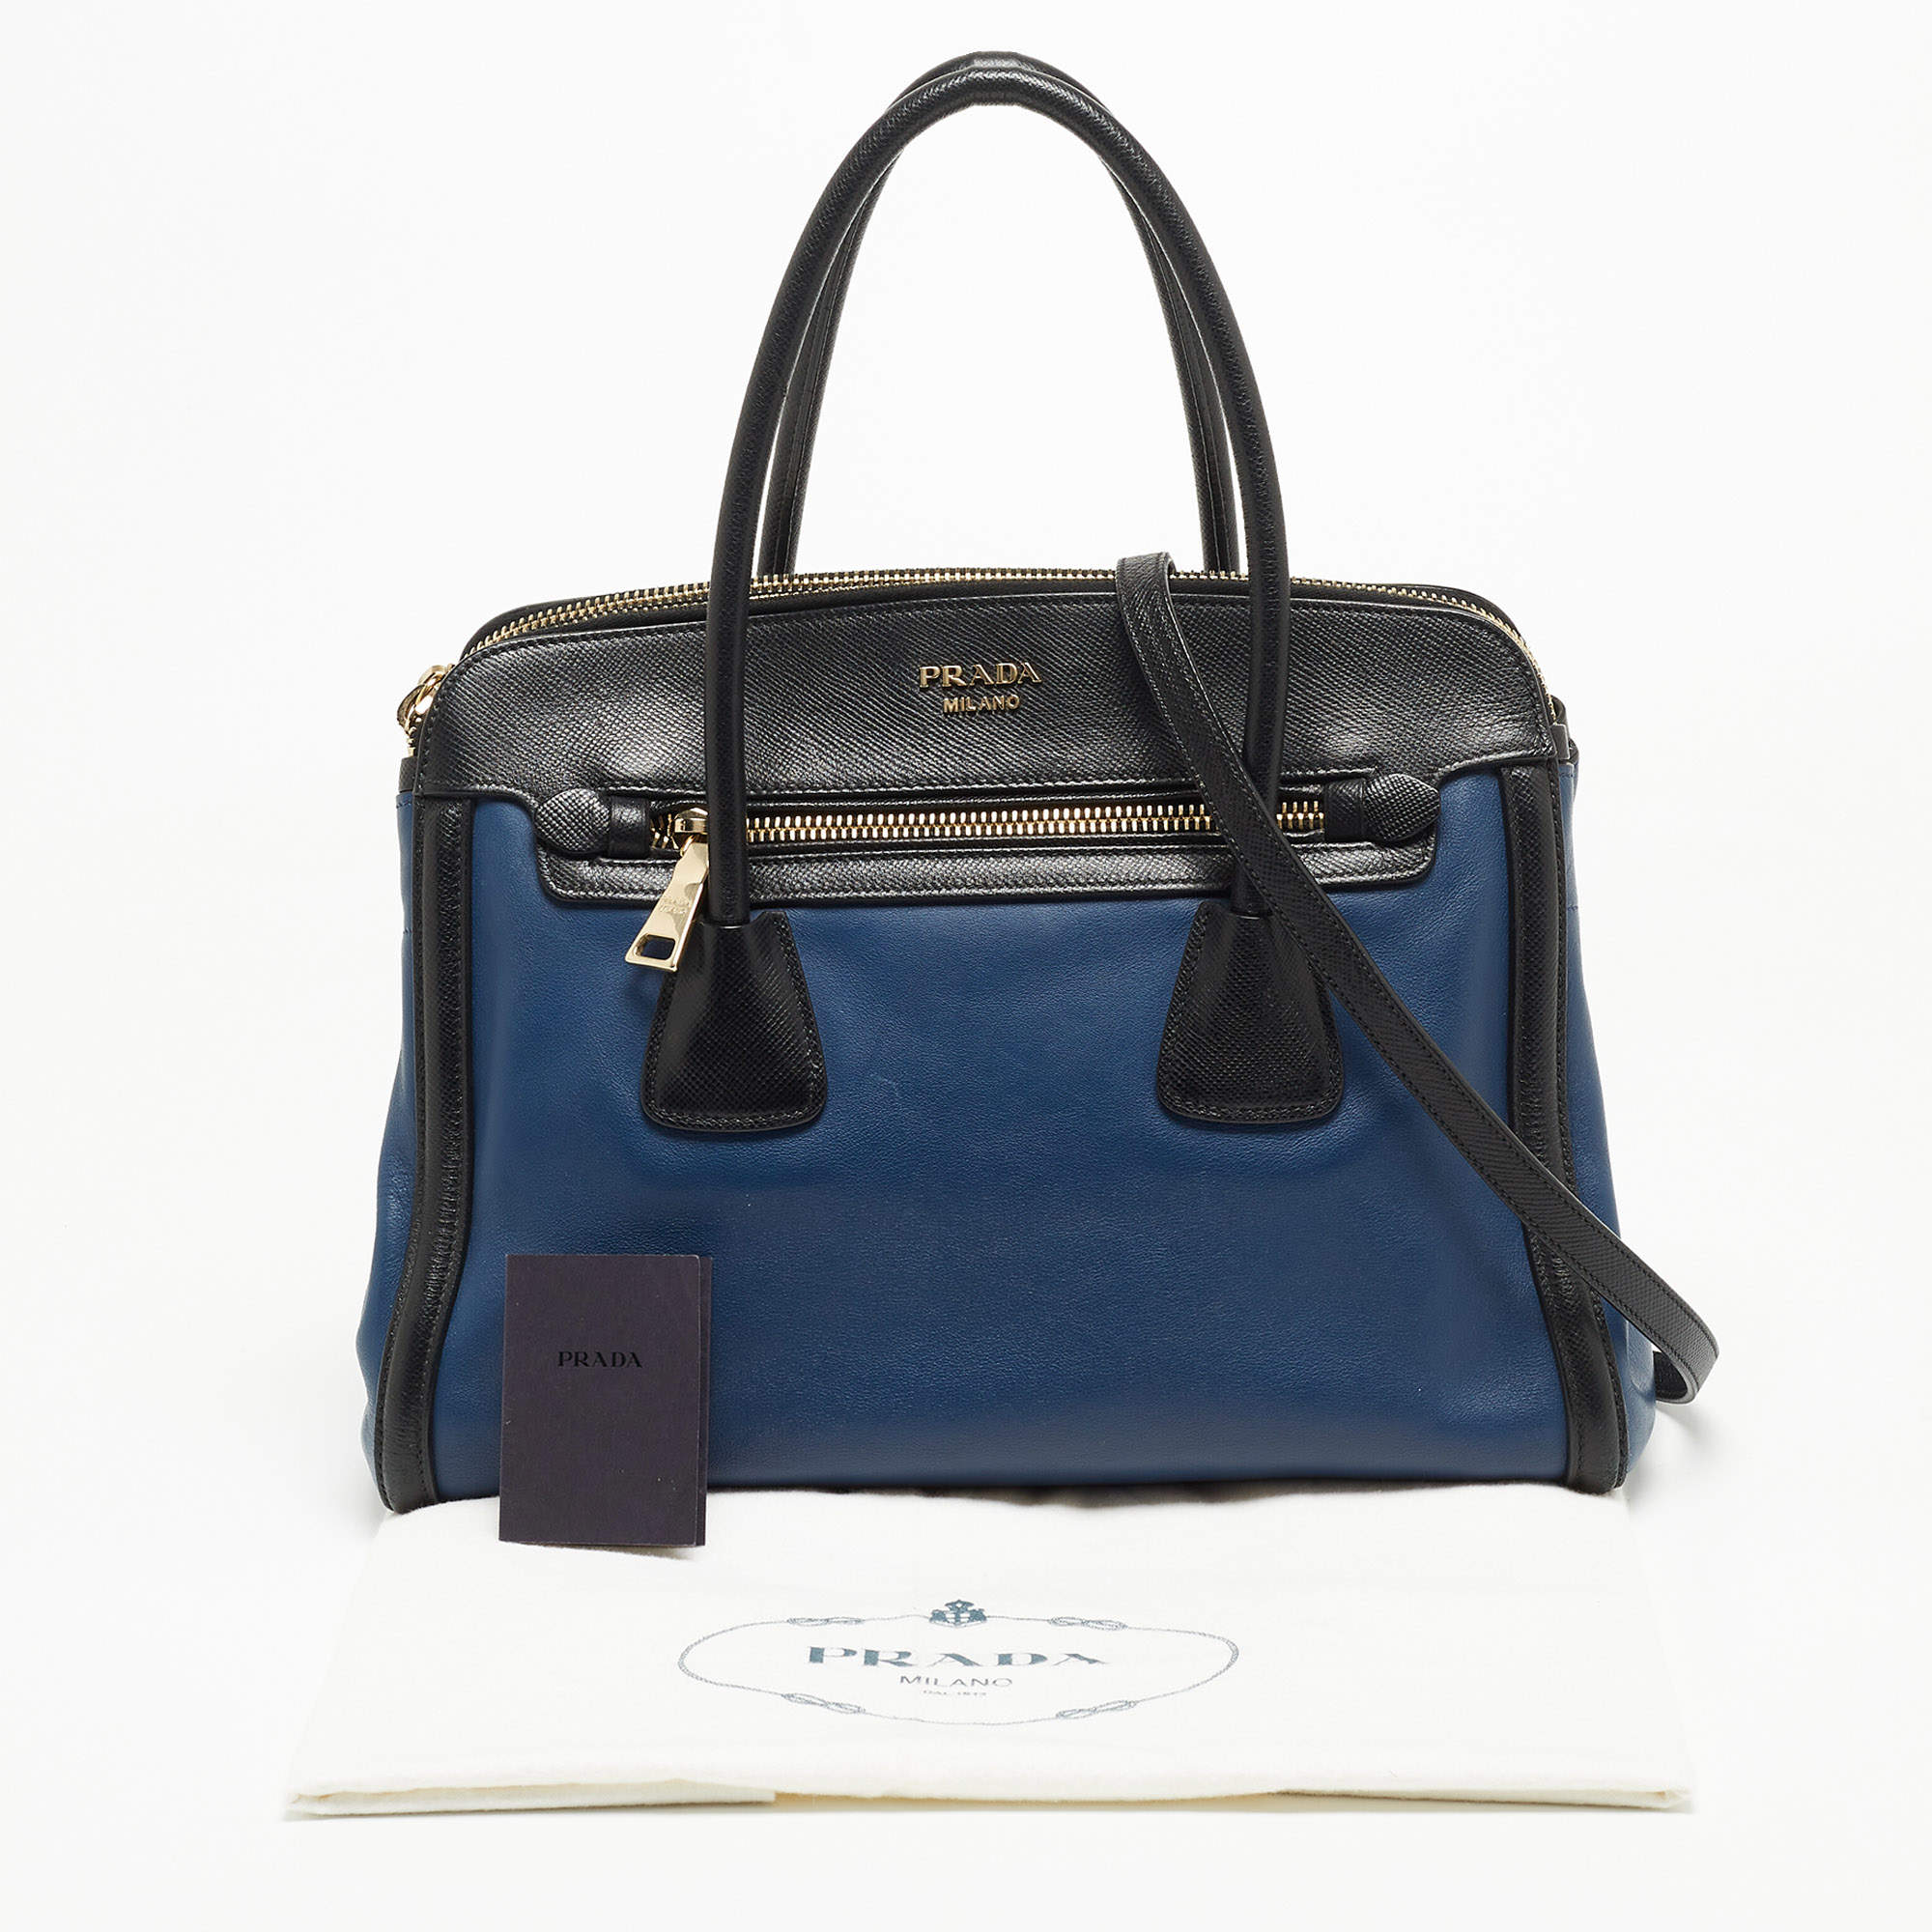 Prada Light Blue Saffiano Leather Tote Bag - Yoogi's Closet